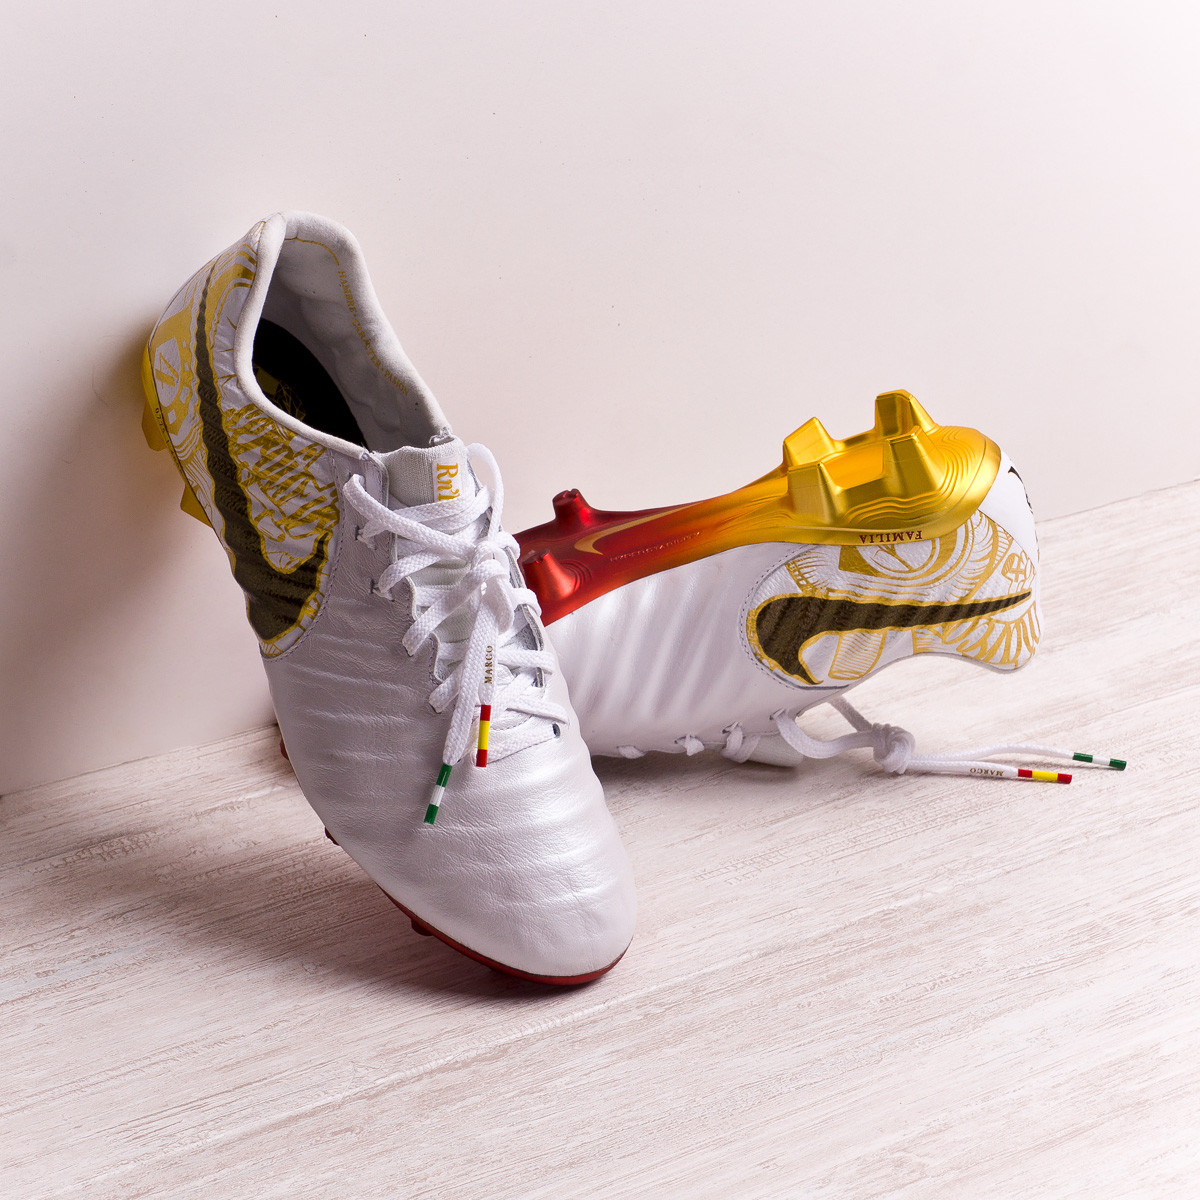 diferente a Ortografía acceso El capitán Sergio Ramos recibe botas exclusivas - Blogs - Fútbol Emotion